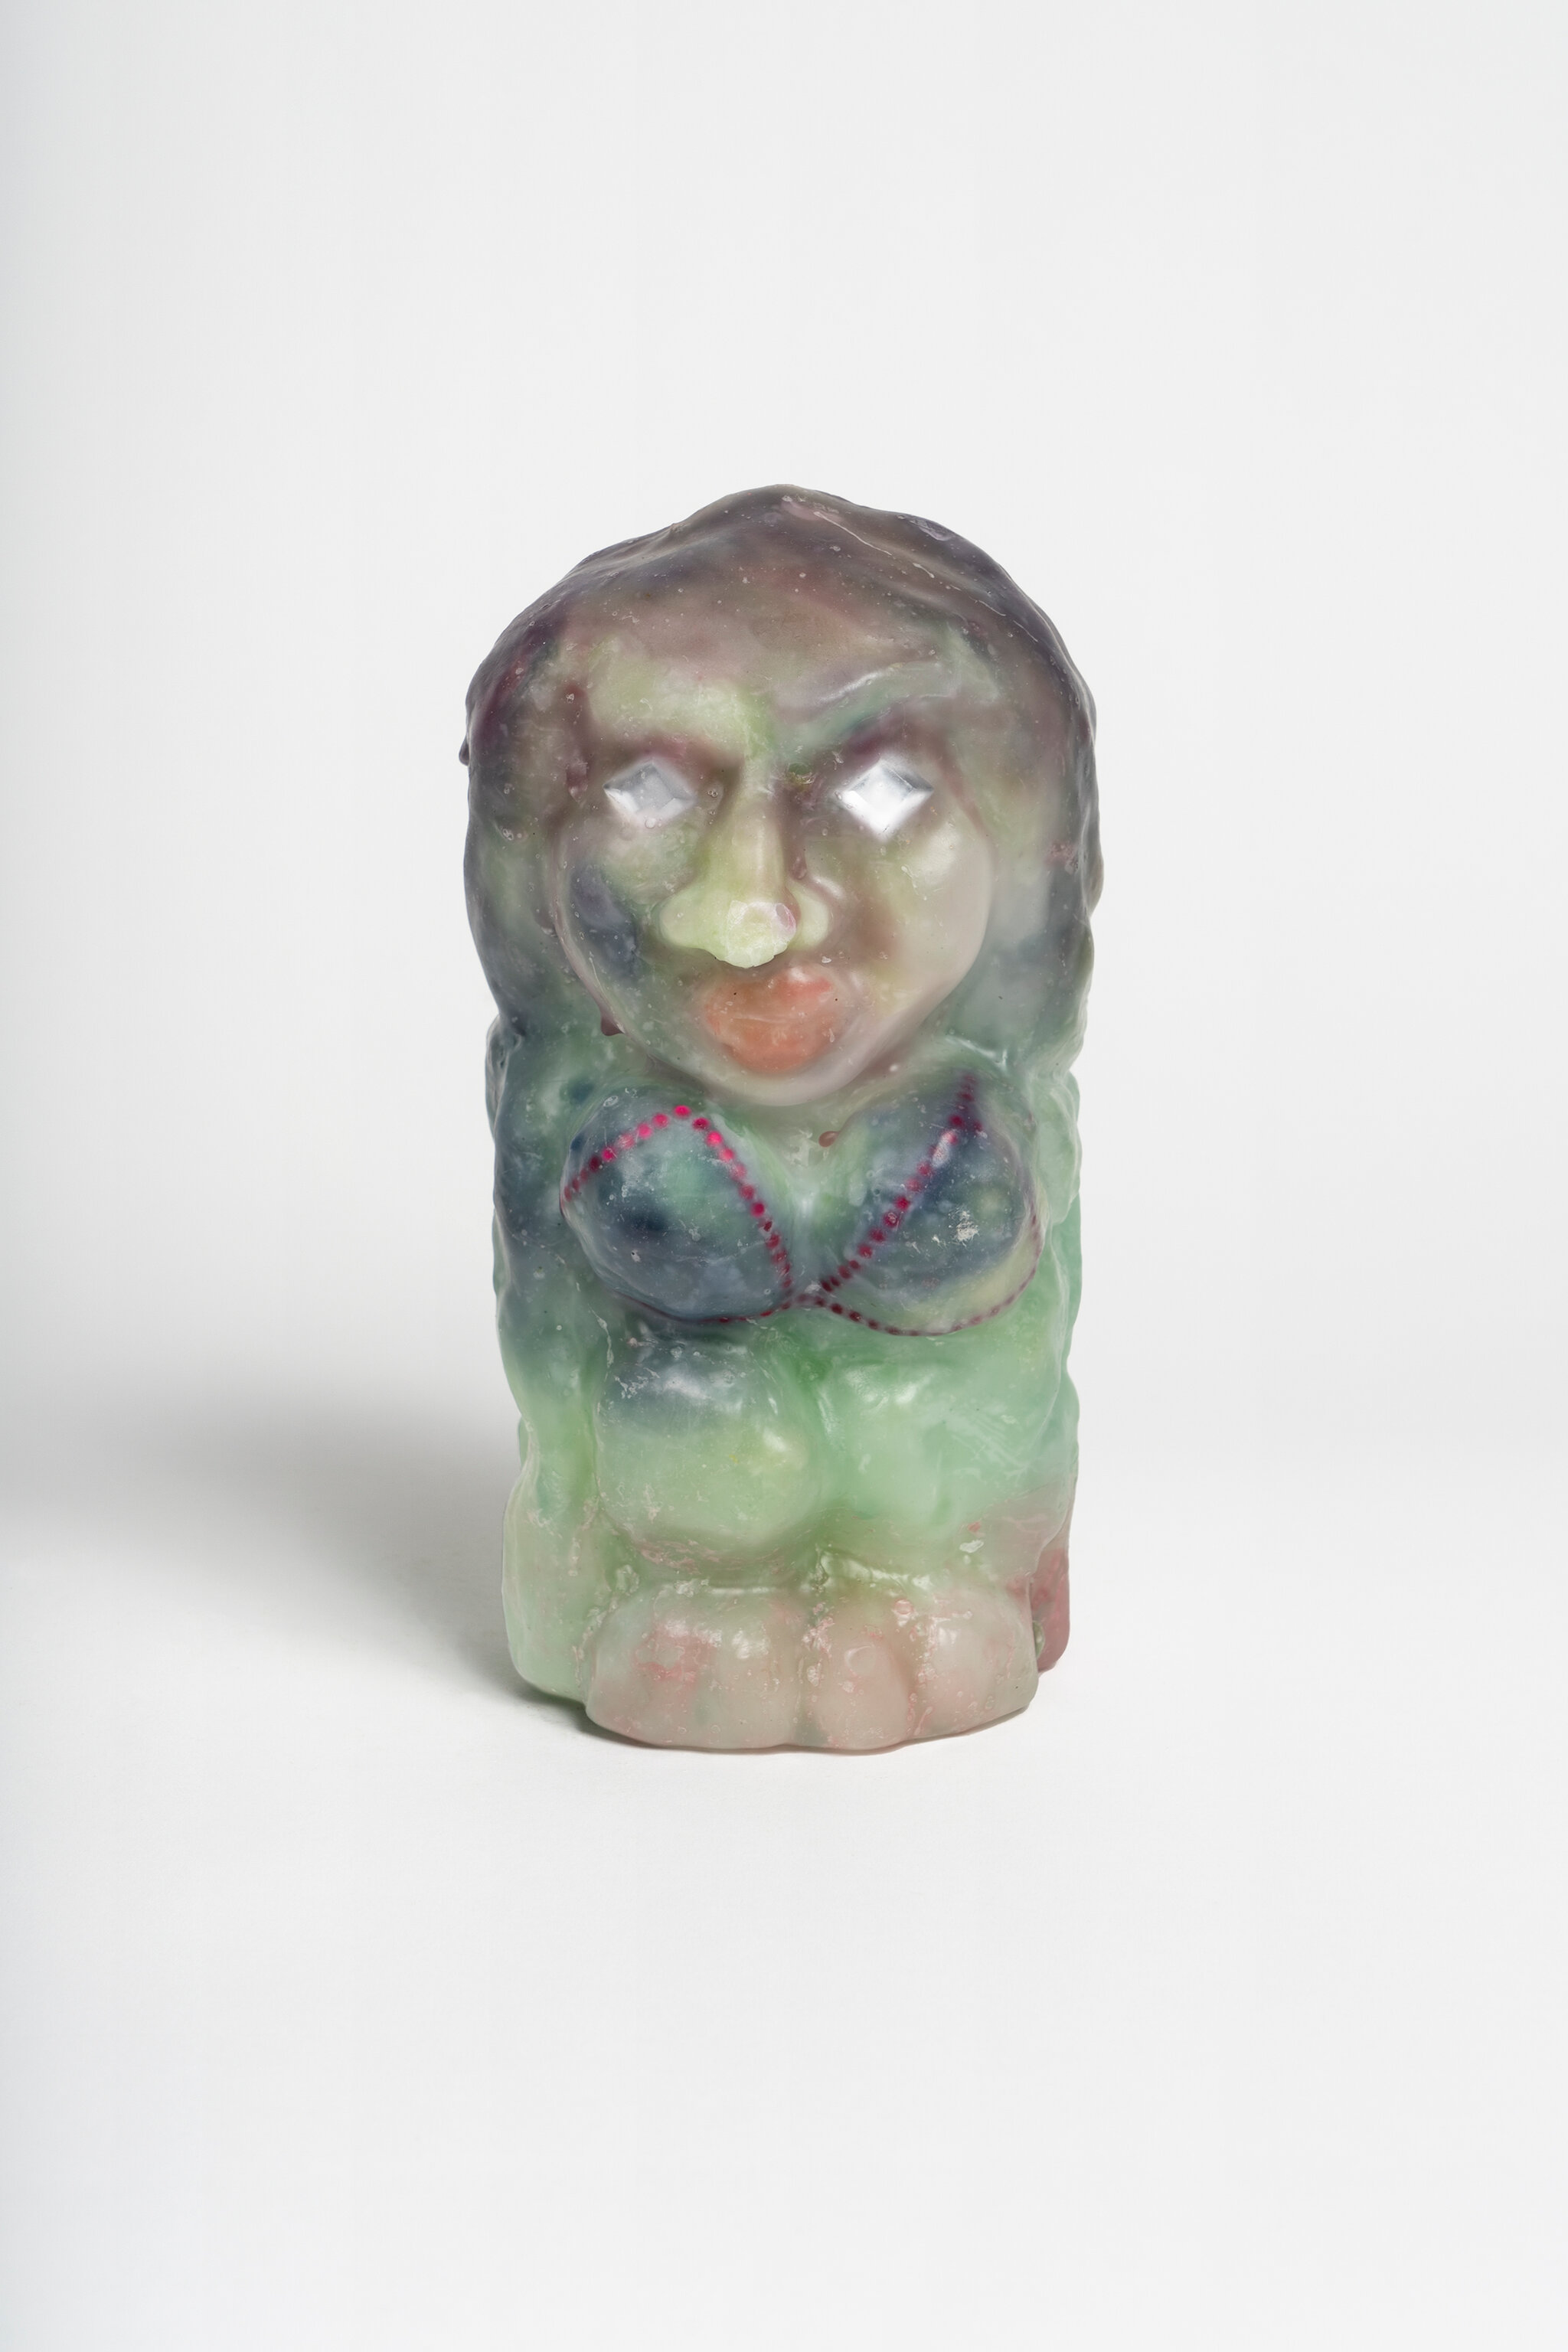 Goddess/Goblin wax sculpture, 300 EUR